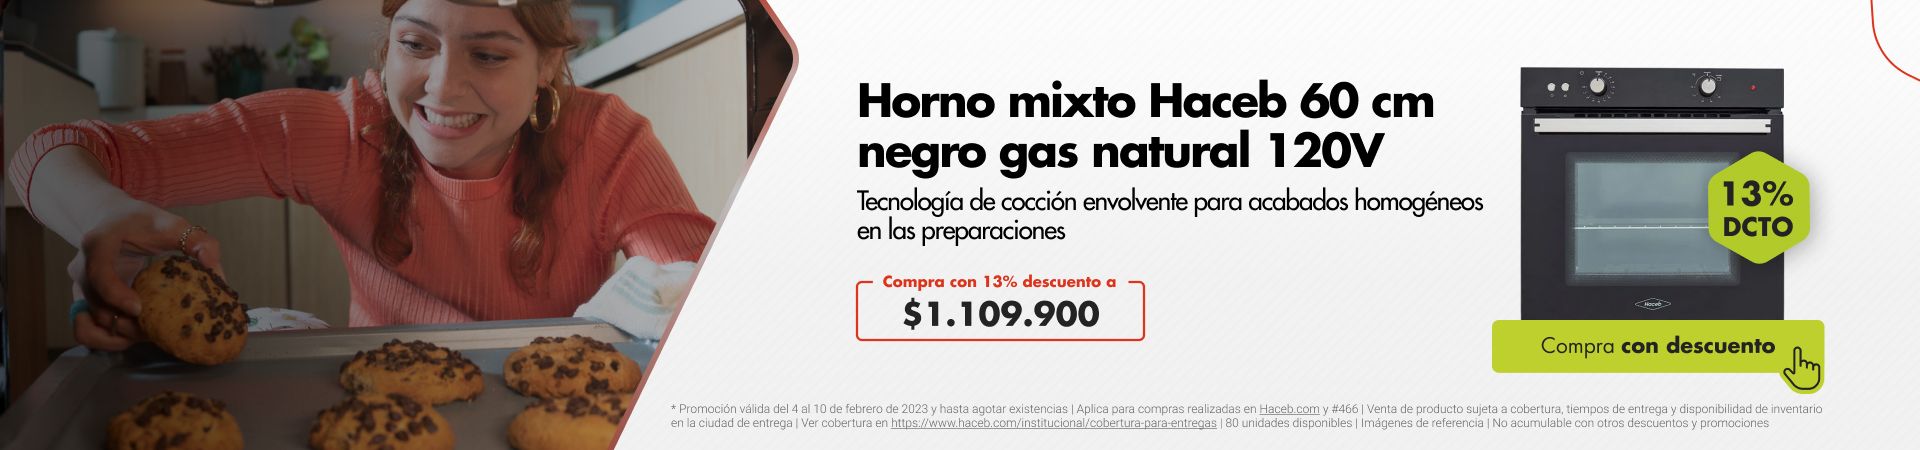 Horno mixto Haceb 60 cm negro gas natural 120V. Tecnología de cocción envolvente para acabados homogéneos en las preparaciones.